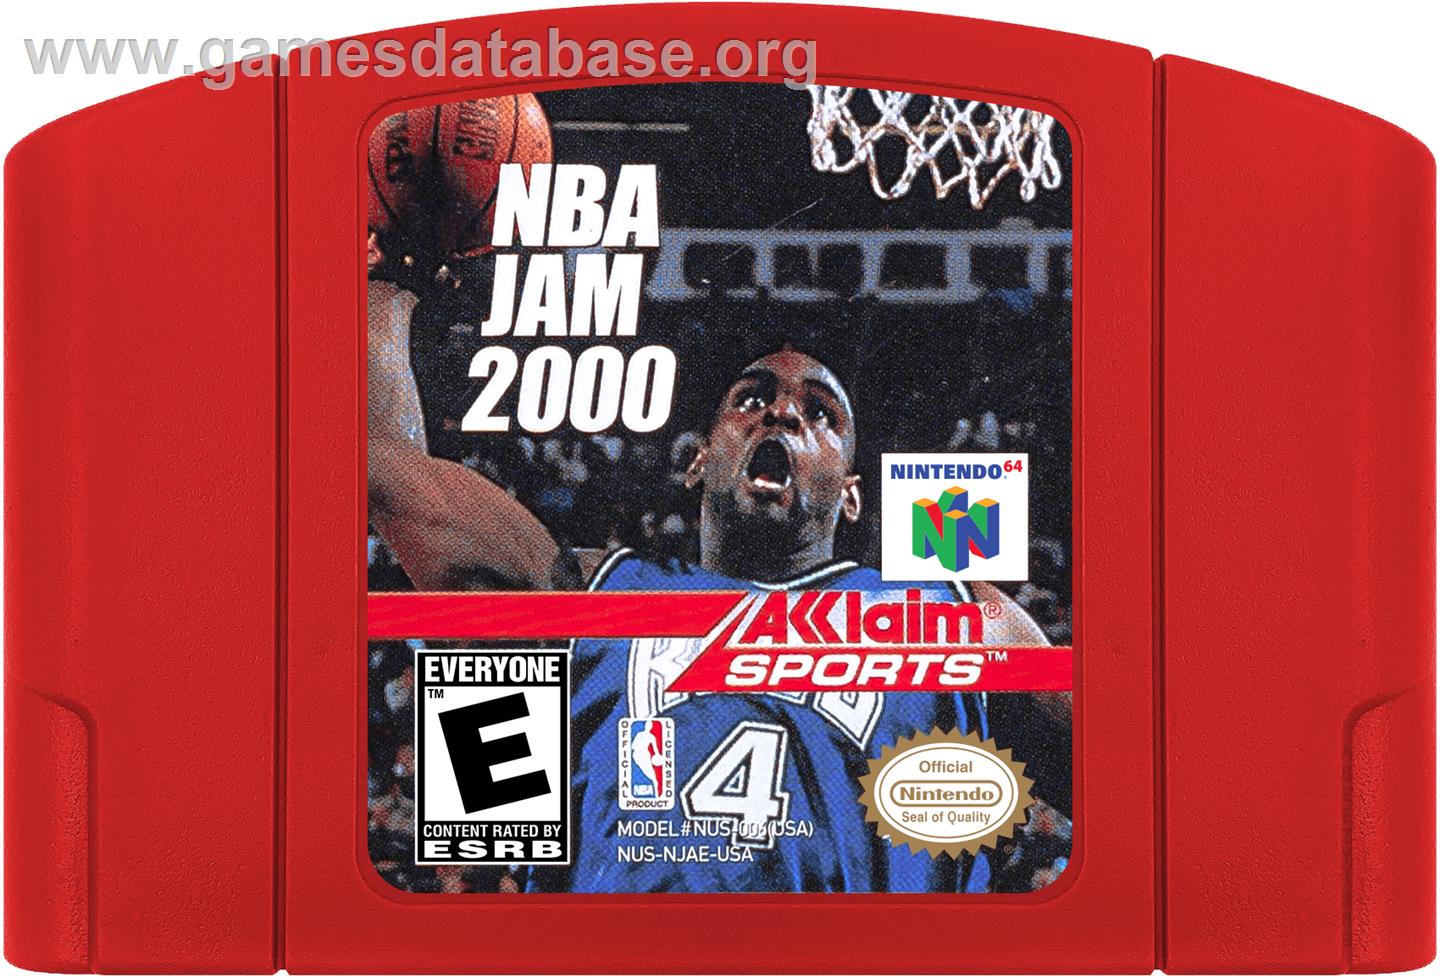 NBA Jam 2000 - Nintendo N64 - Artwork - Cartridge